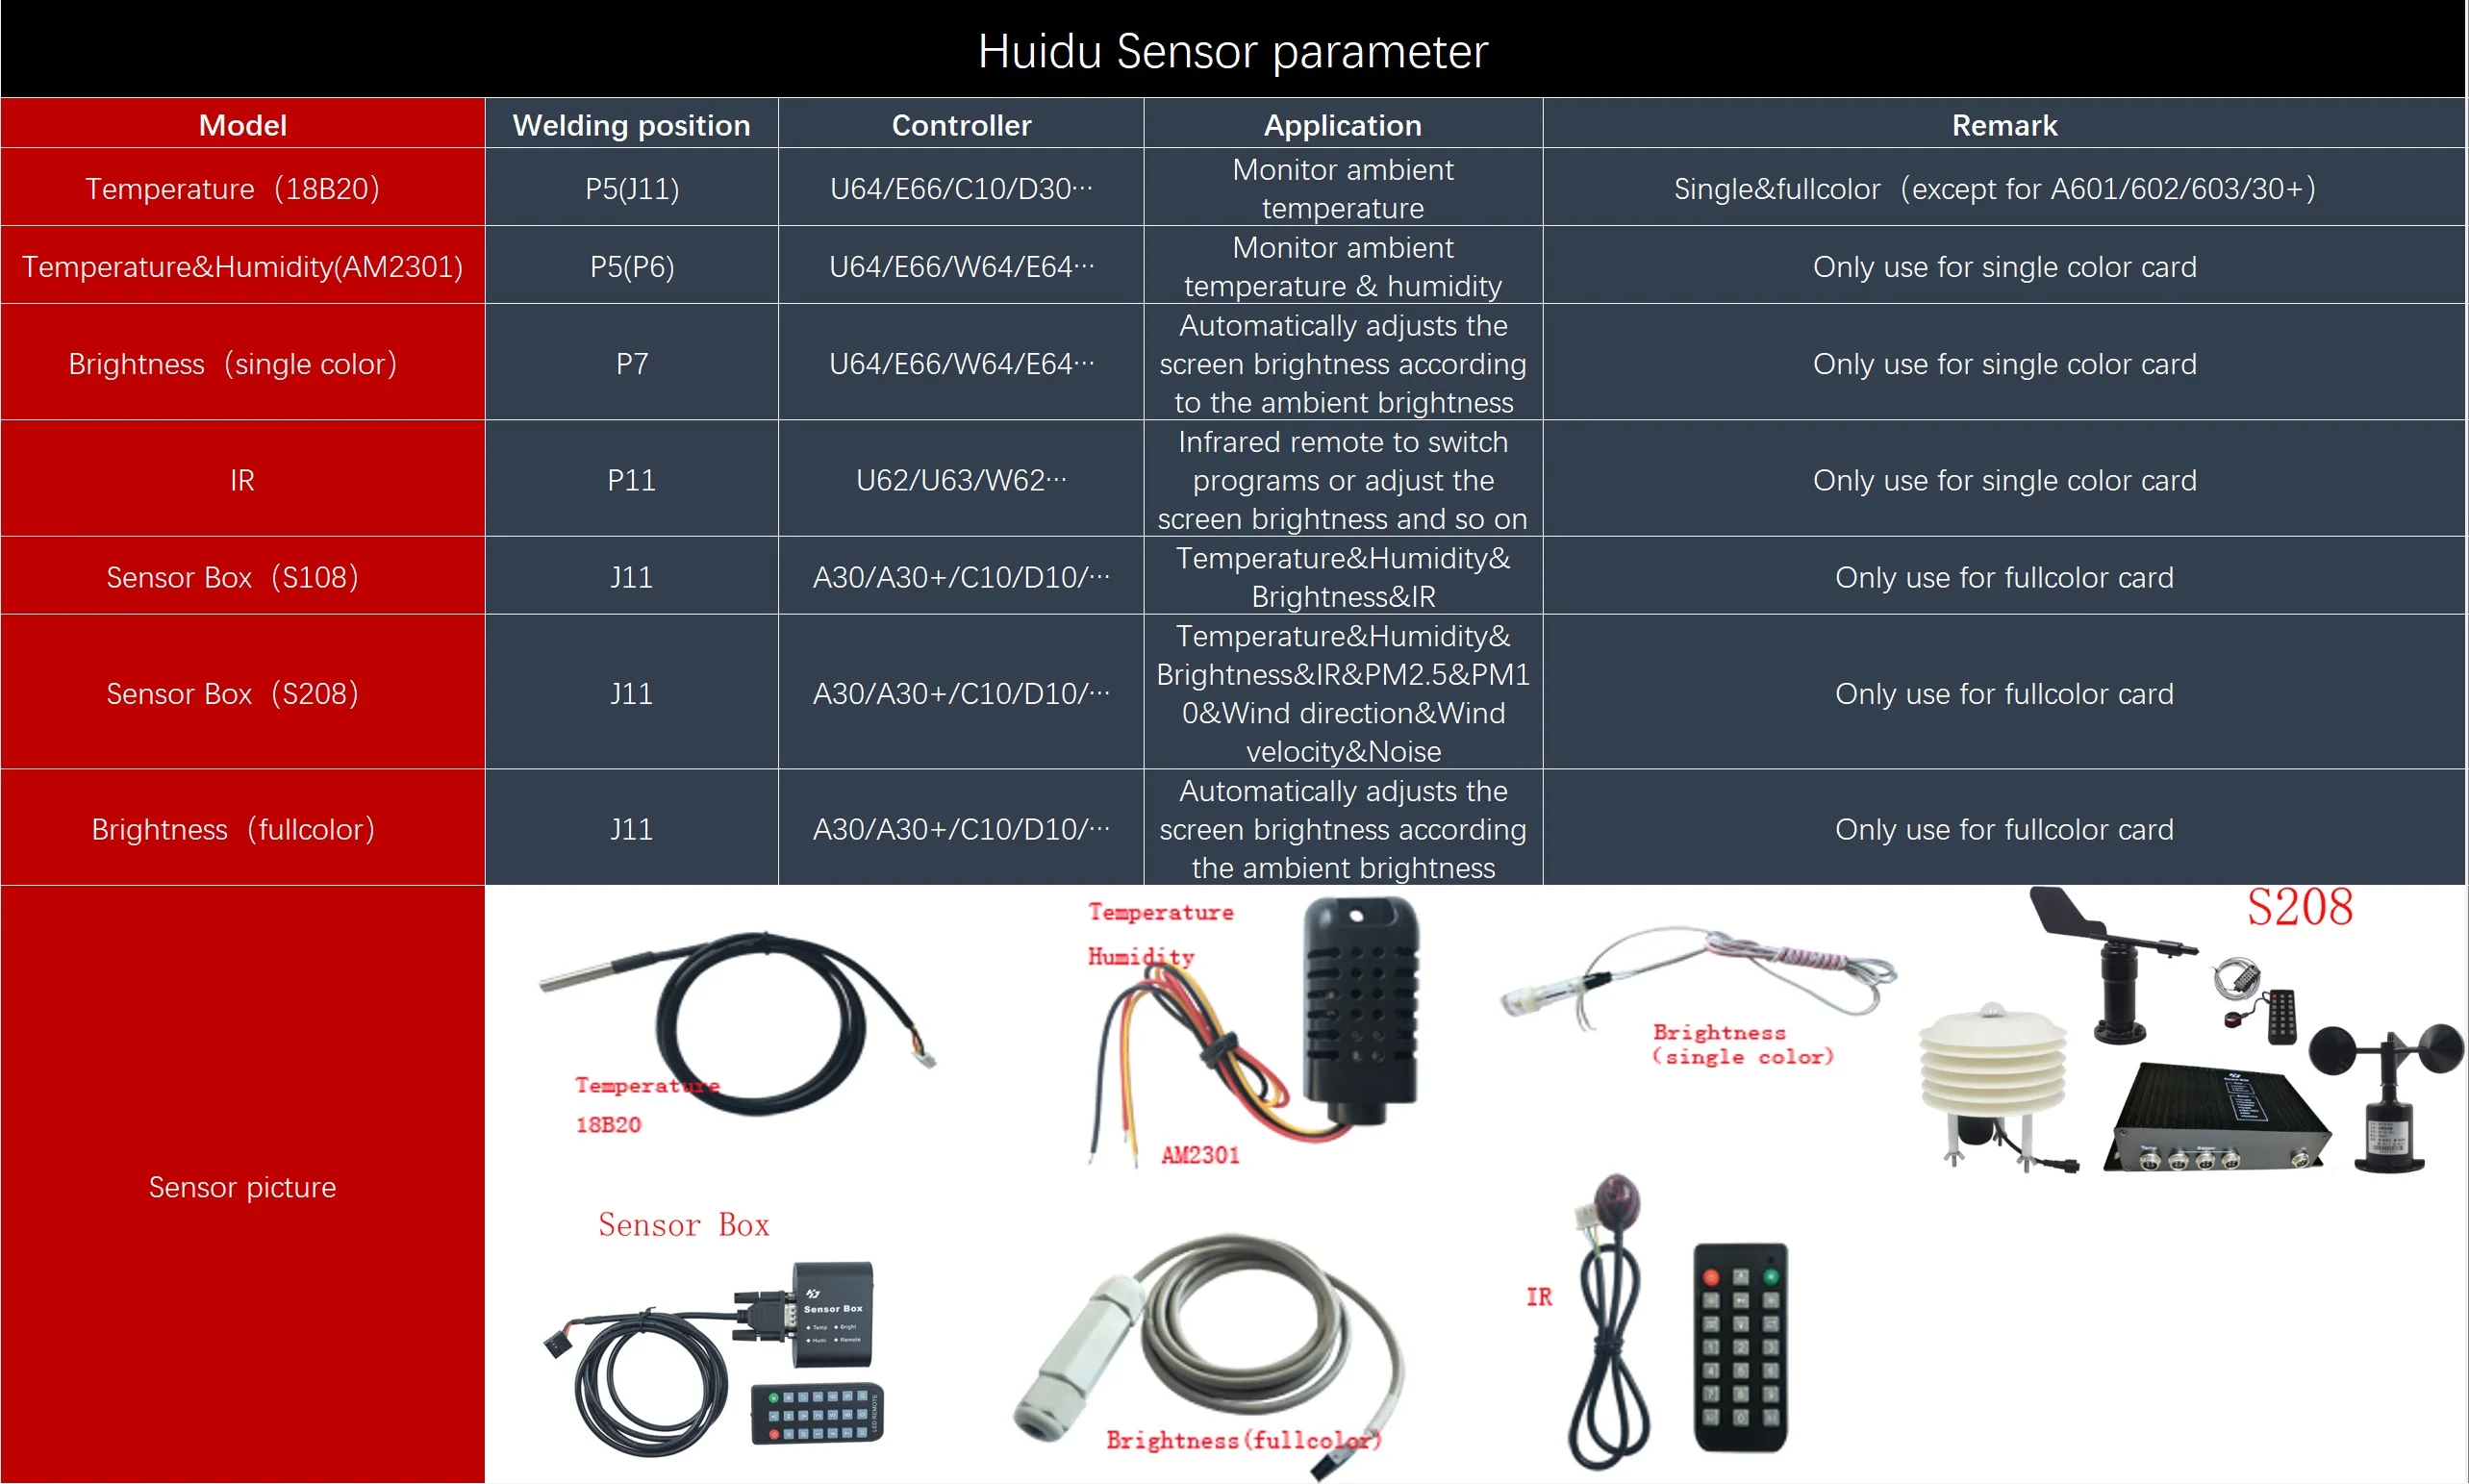 Huidu датчик температуры s 18B20, датчик температуры и влажности AM2301, одиночный/RGB датчик яркости, сенсорная коробка, 1R пульт дистанционного управления